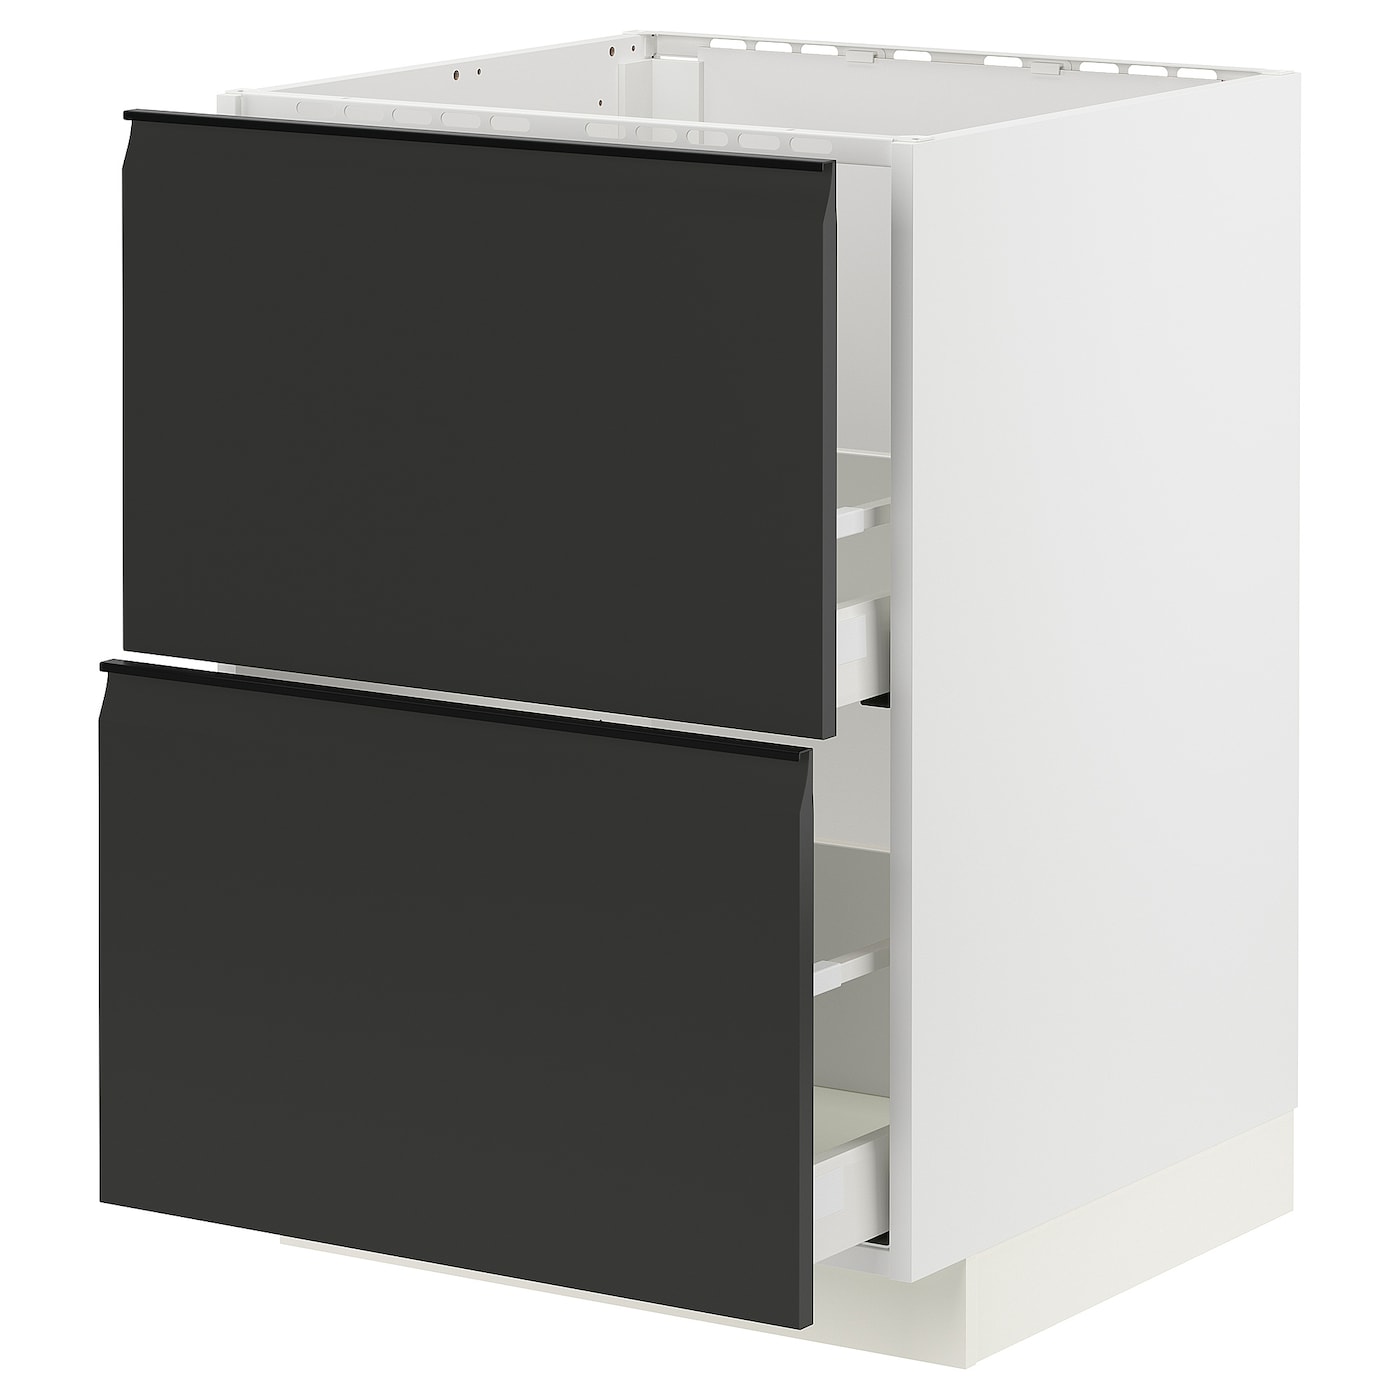 Напольный шкаф - METOD / MAXIMERA IKEA/ МЕТОД/ МАКСИМЕРА ИКЕА,  60х60 см, белый/черный